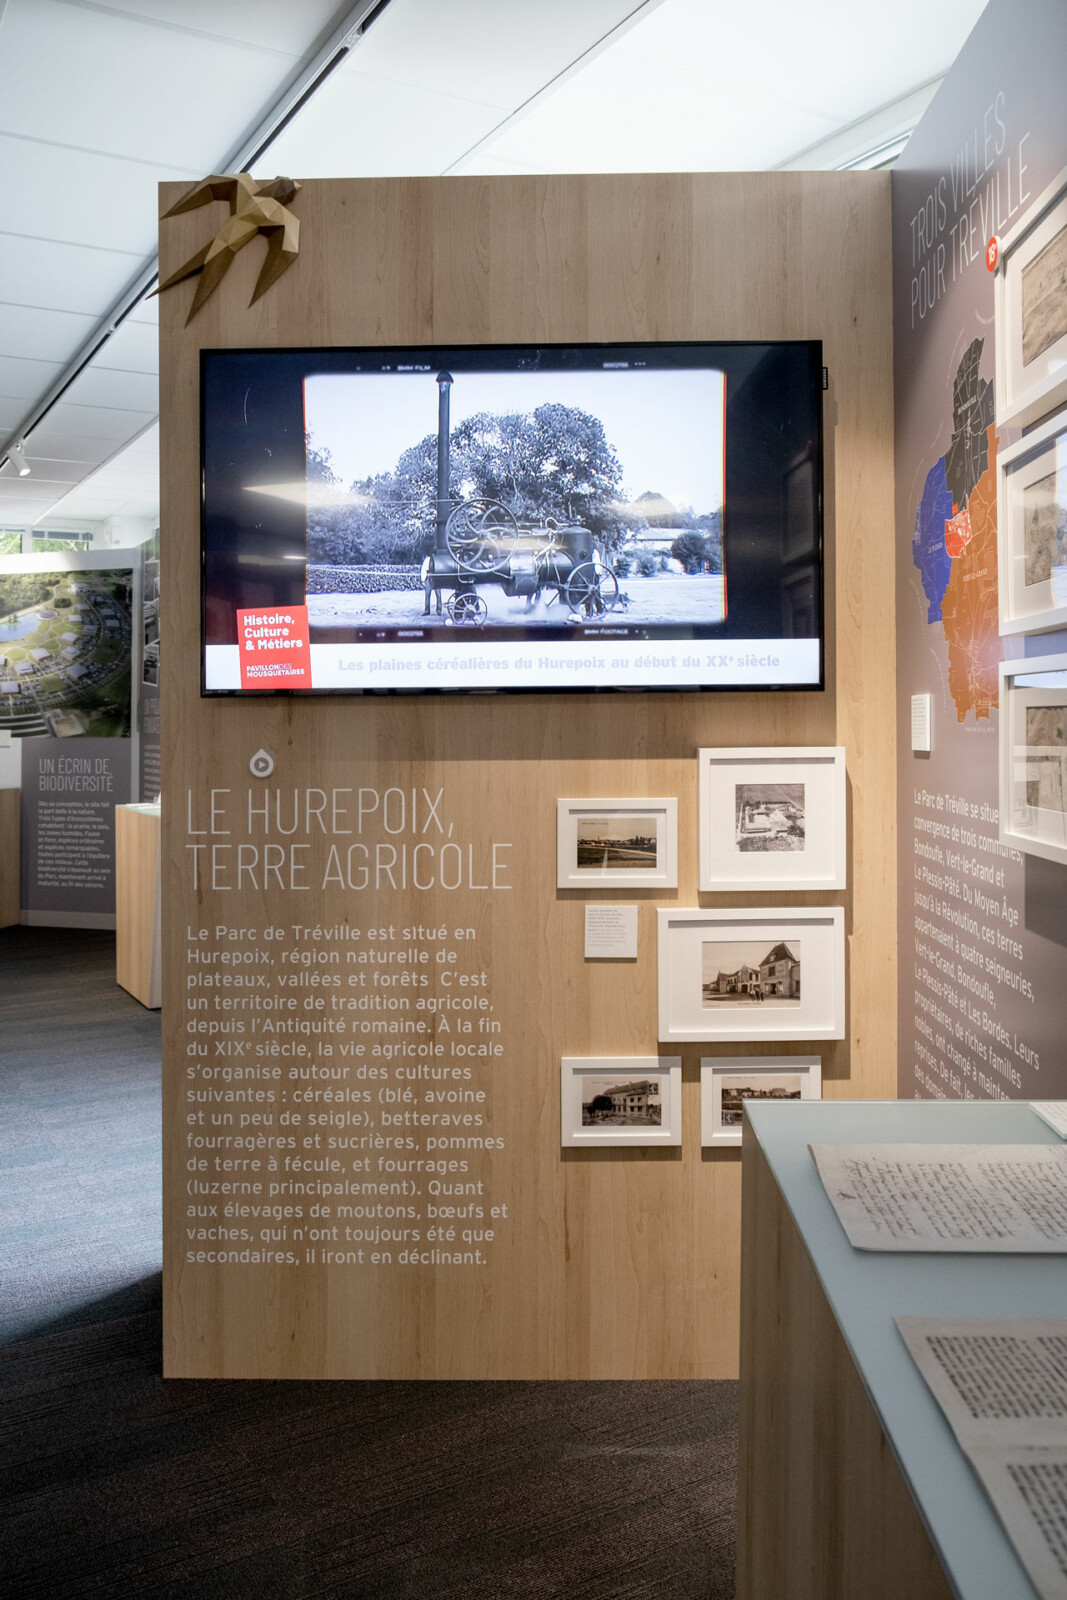 Panneau de l’exposition temporaire consacrée au Parc de Tréville, le siège des Mousquetaires. Une vidéo sur un écran et des cartes postales montrent que le Hurepoix est une région de tradition agricole.